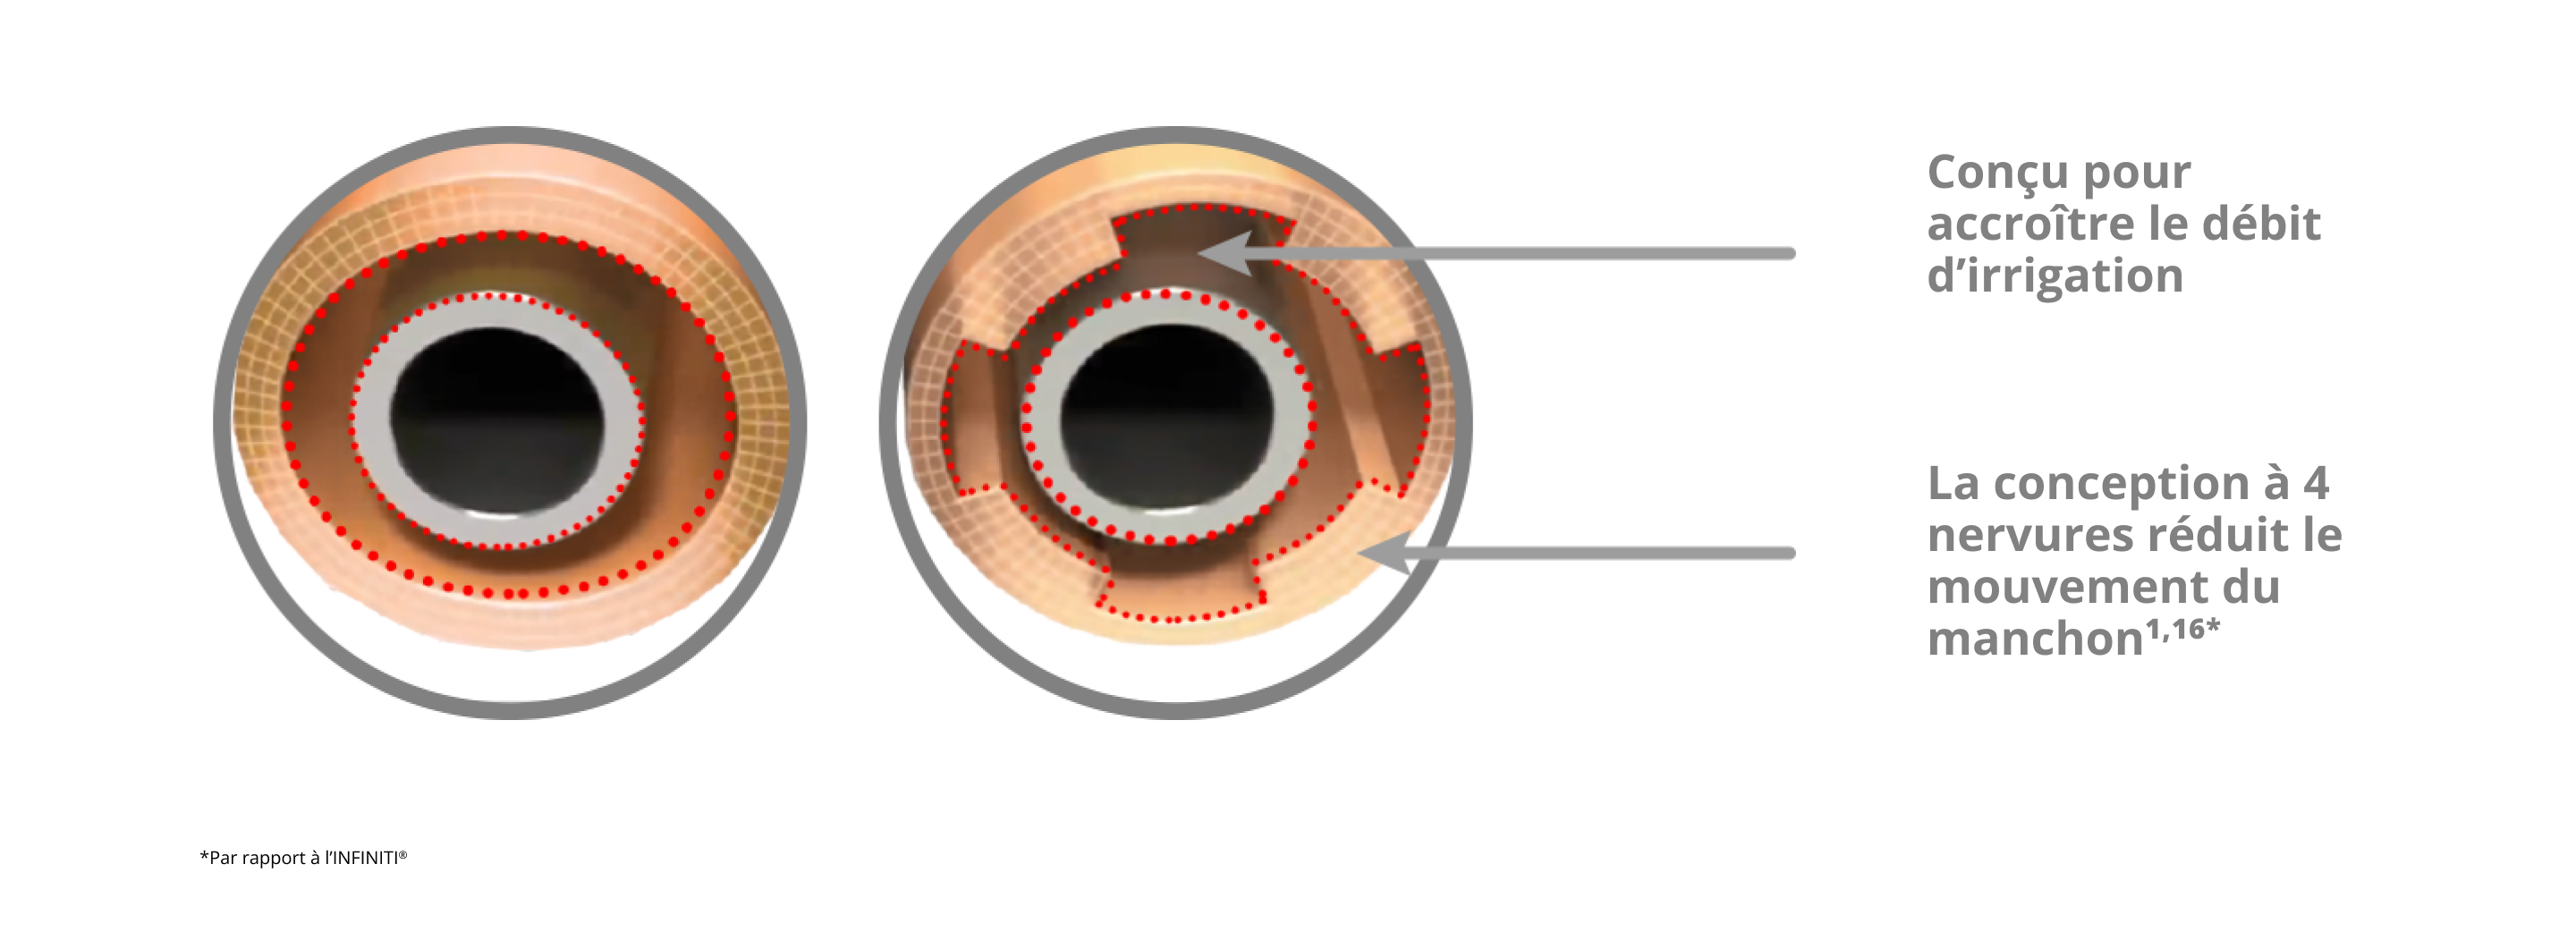 Cette image montre le manchon d'irrigation INTREPID avec une conception de manchon à 4 nervures qui réduit le mouvement du manchon et augmente le débit d'irrigation par rapport au système INFINITI Vision.